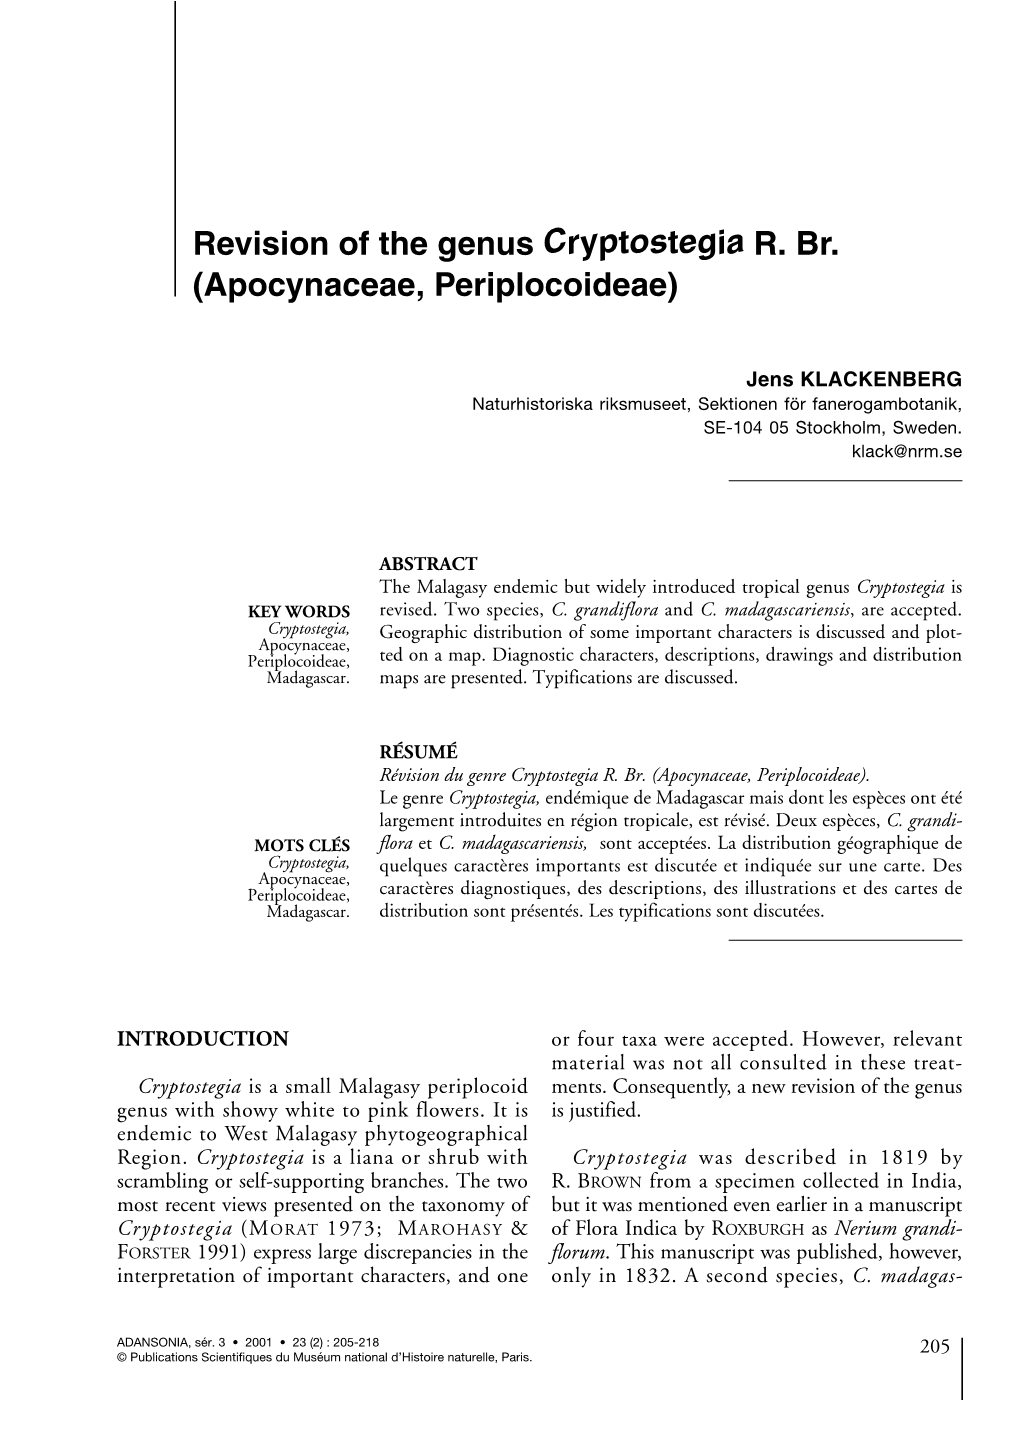 Revision of the Genus Cryptostegia R. Br. (Apocynaceae, Periplocoideae)